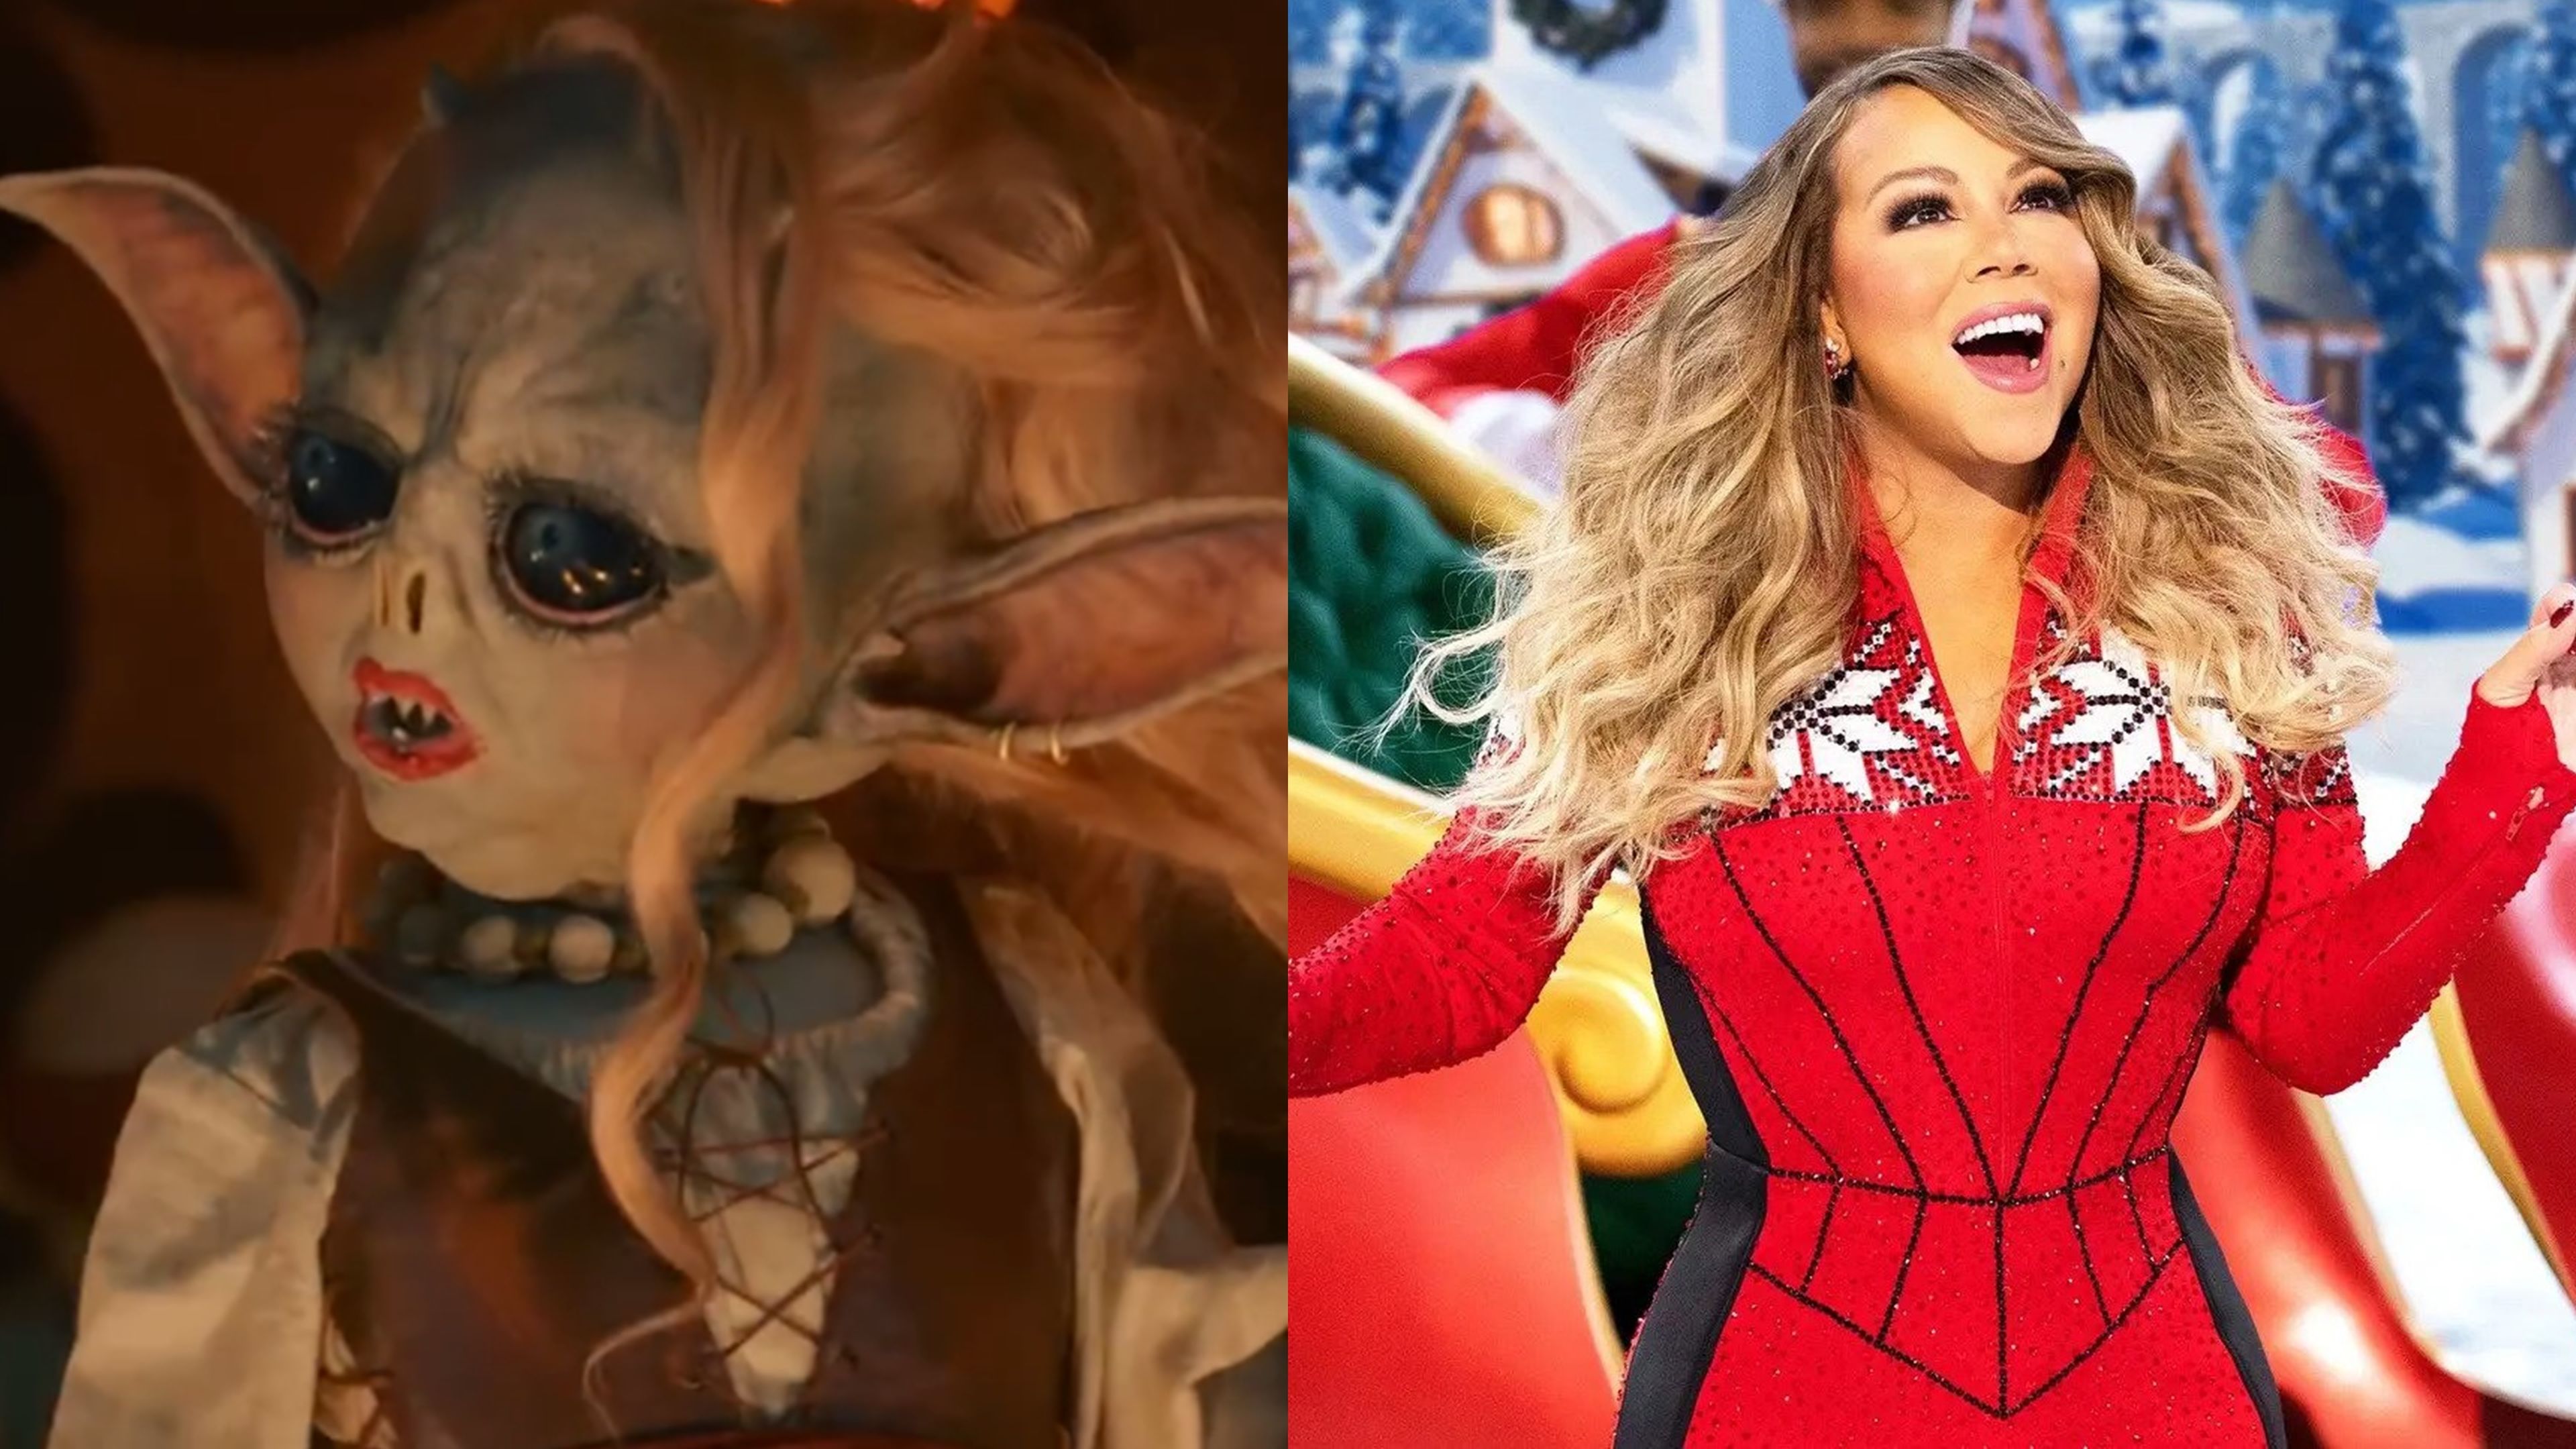 La canción navideña de los Goblin en Doctor Who consigue destronar a Mariah Carey